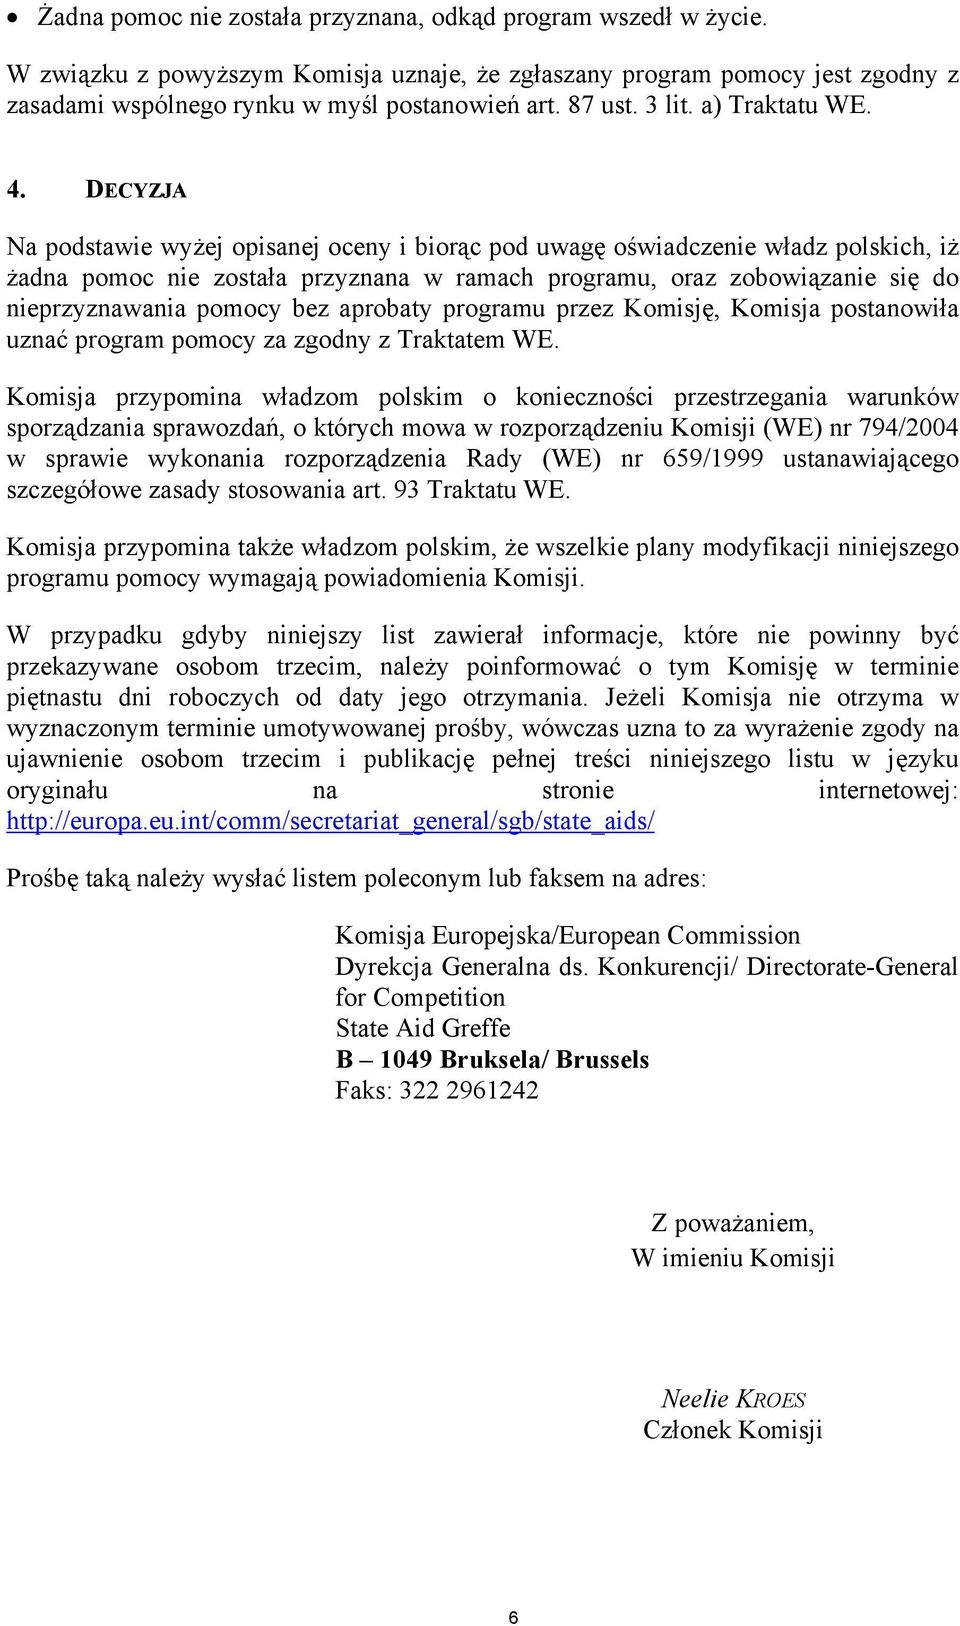 DECYZJA Na podstawie wyżej opisanej oceny i biorąc pod uwagę oświadczenie władz polskich, iż żadna pomoc nie została przyznana w ramach programu, oraz zobowiązanie się do nieprzyznawania pomocy bez